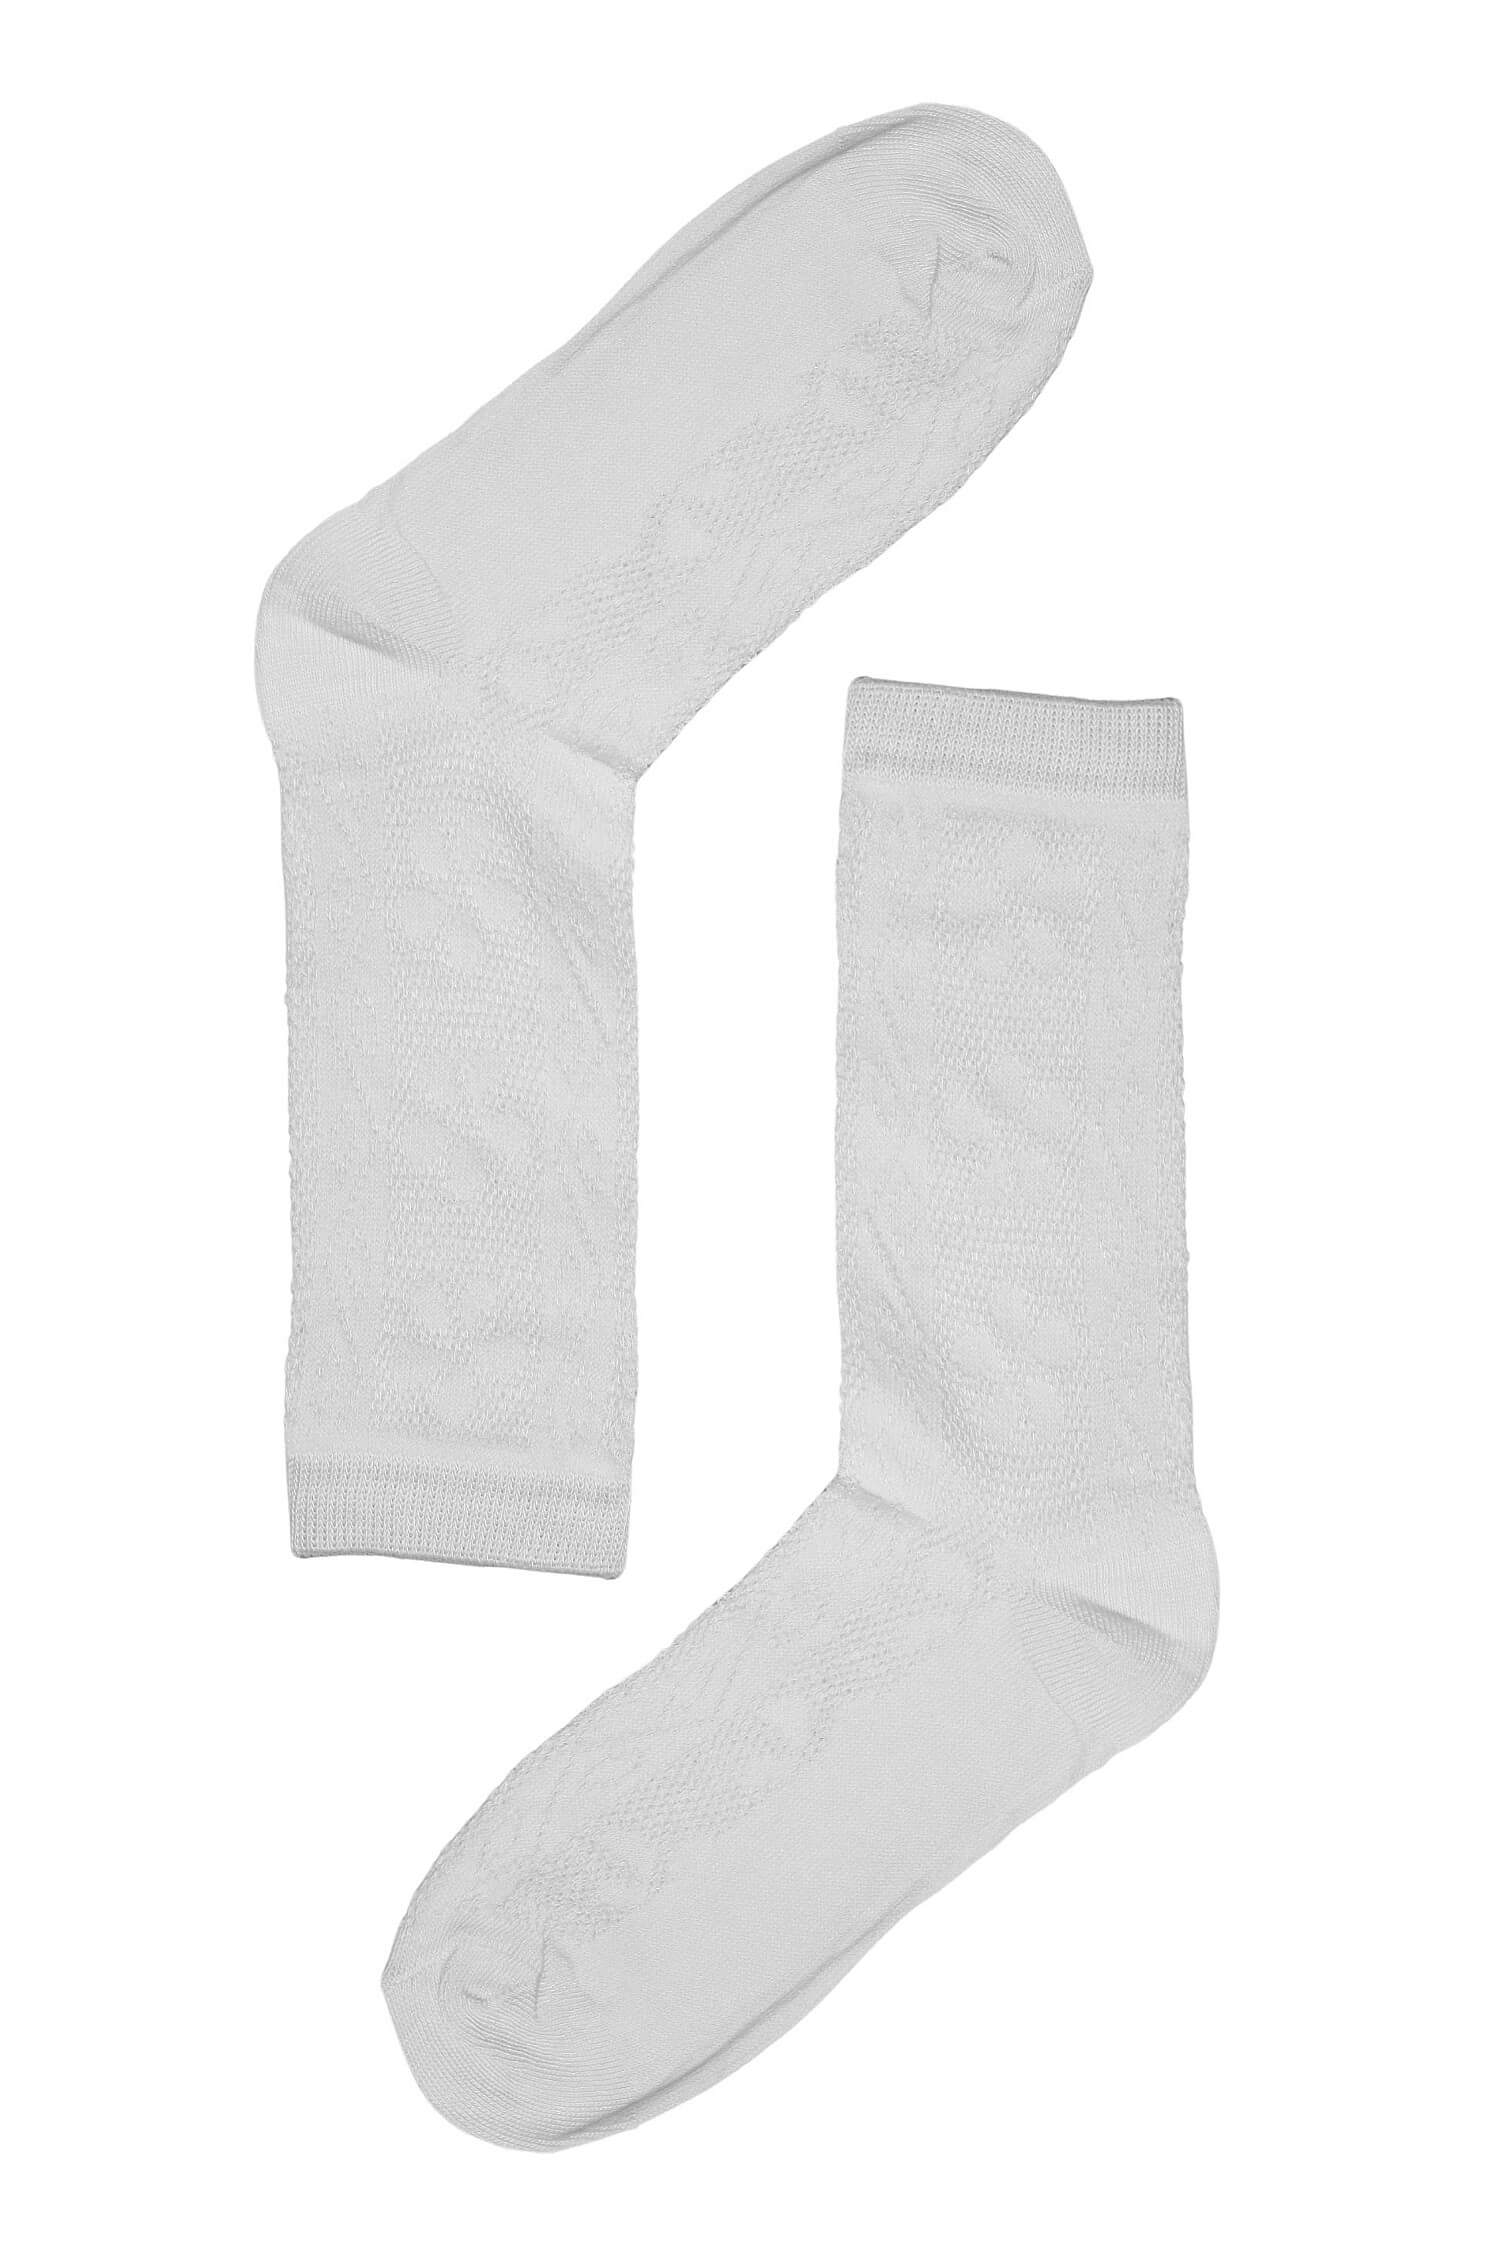 Vzorované dámské ponožky bavlna SK-236 39-41 bílá